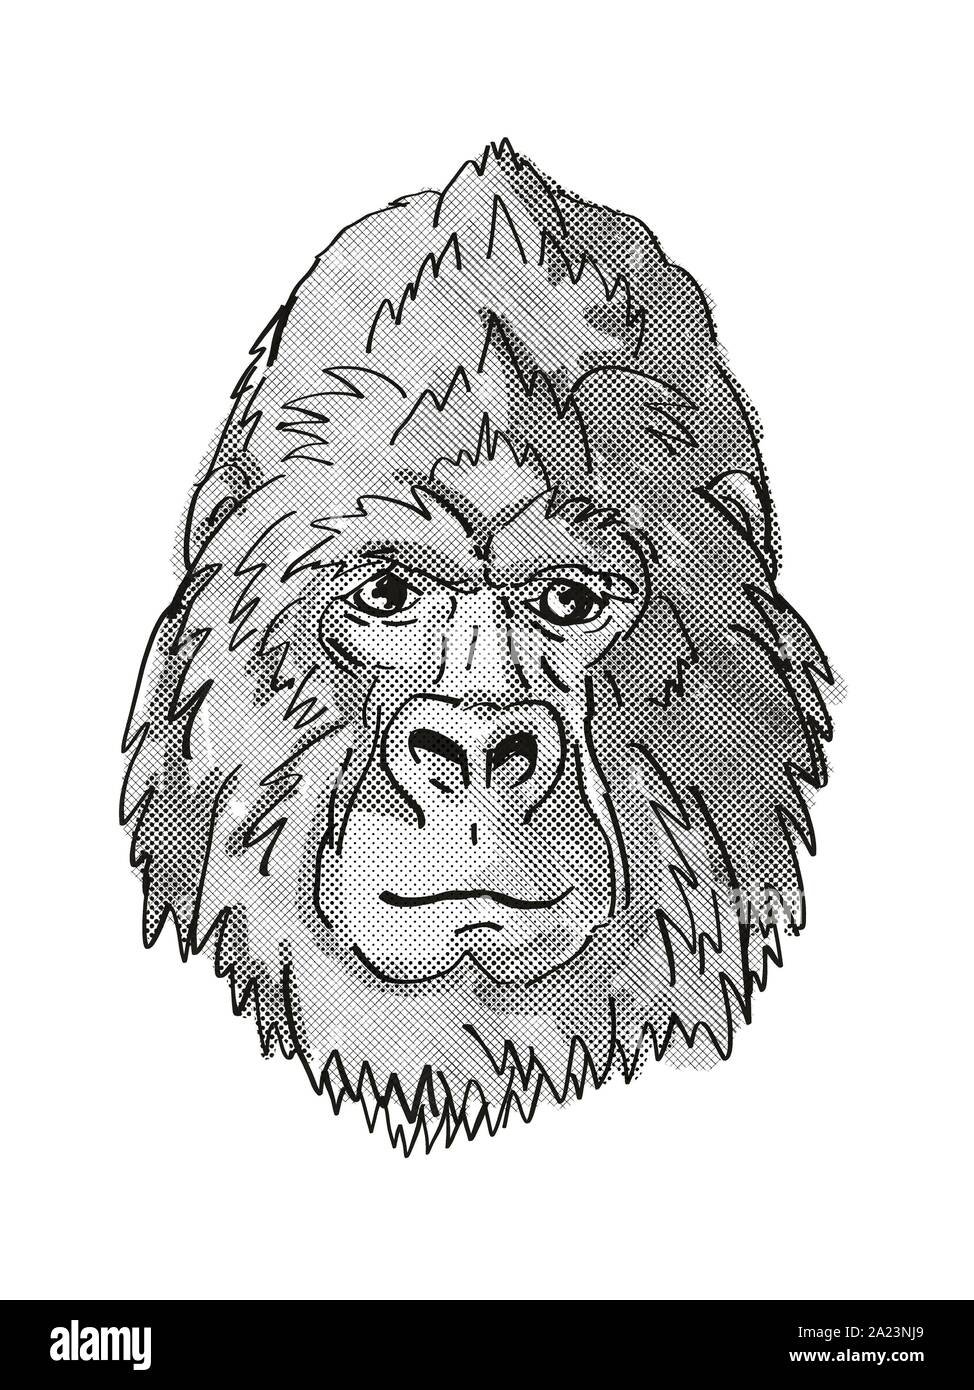 Retro cartoon style dimensions tête d'un dos d'argent ou de gorille de montagne, une espèce de singe, vu de l'avant sur un fond blanc fait dans un noir Banque D'Images